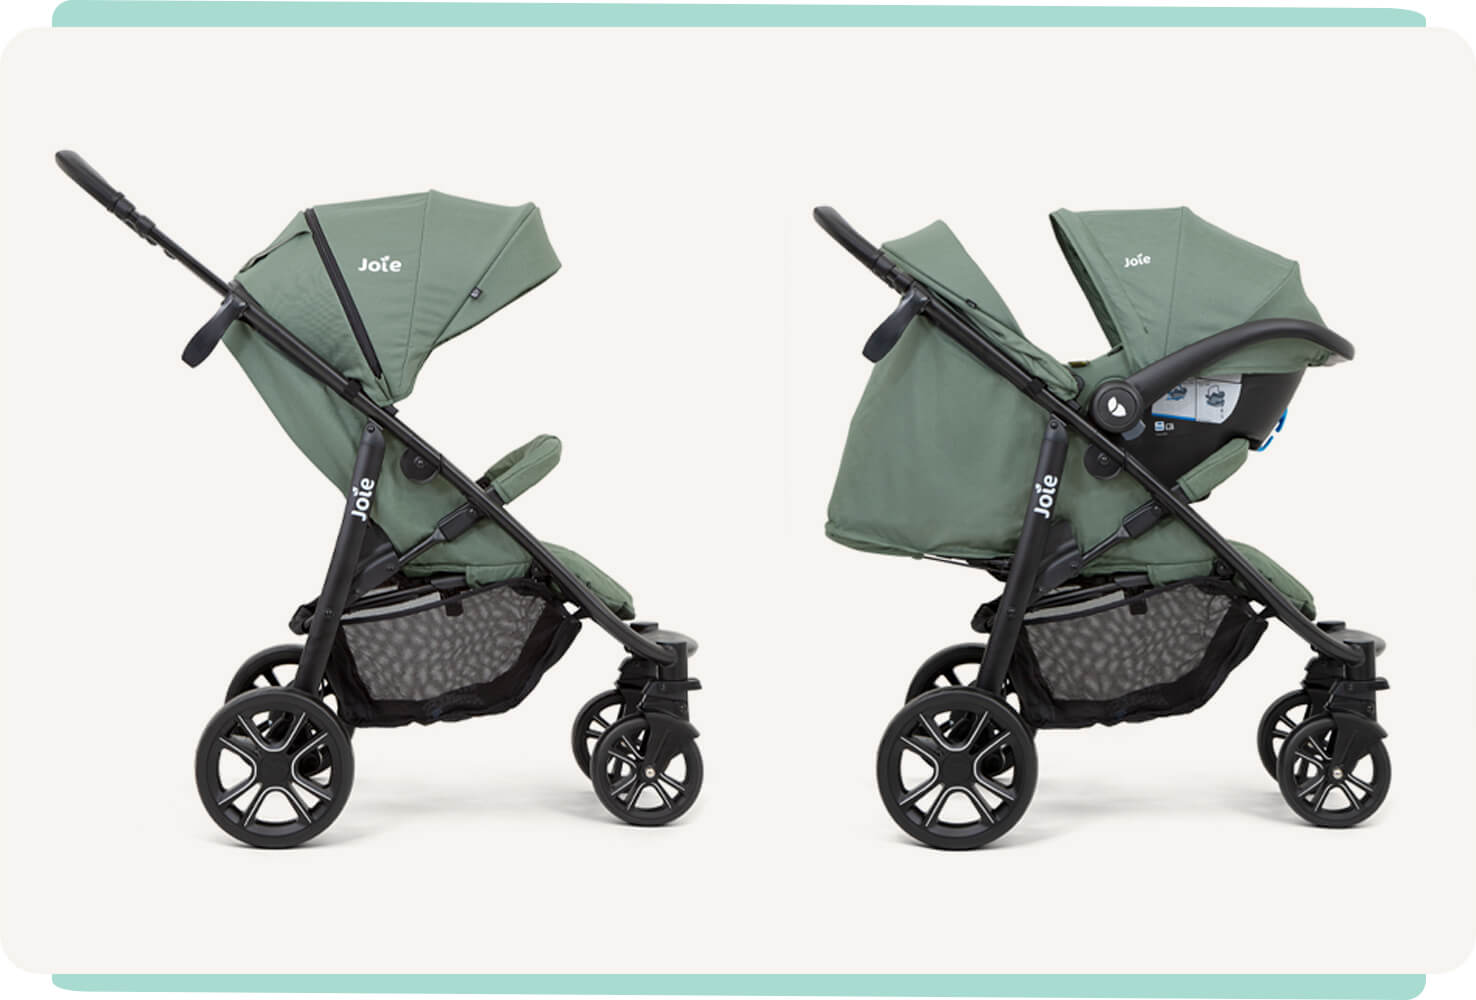 2 grüne litetrax 4 dlx Kinderwagen im Profil, die verschiedene Verwendungsmodi zeigen: Kinderwagen und Kinderwagen mit Babyschale.